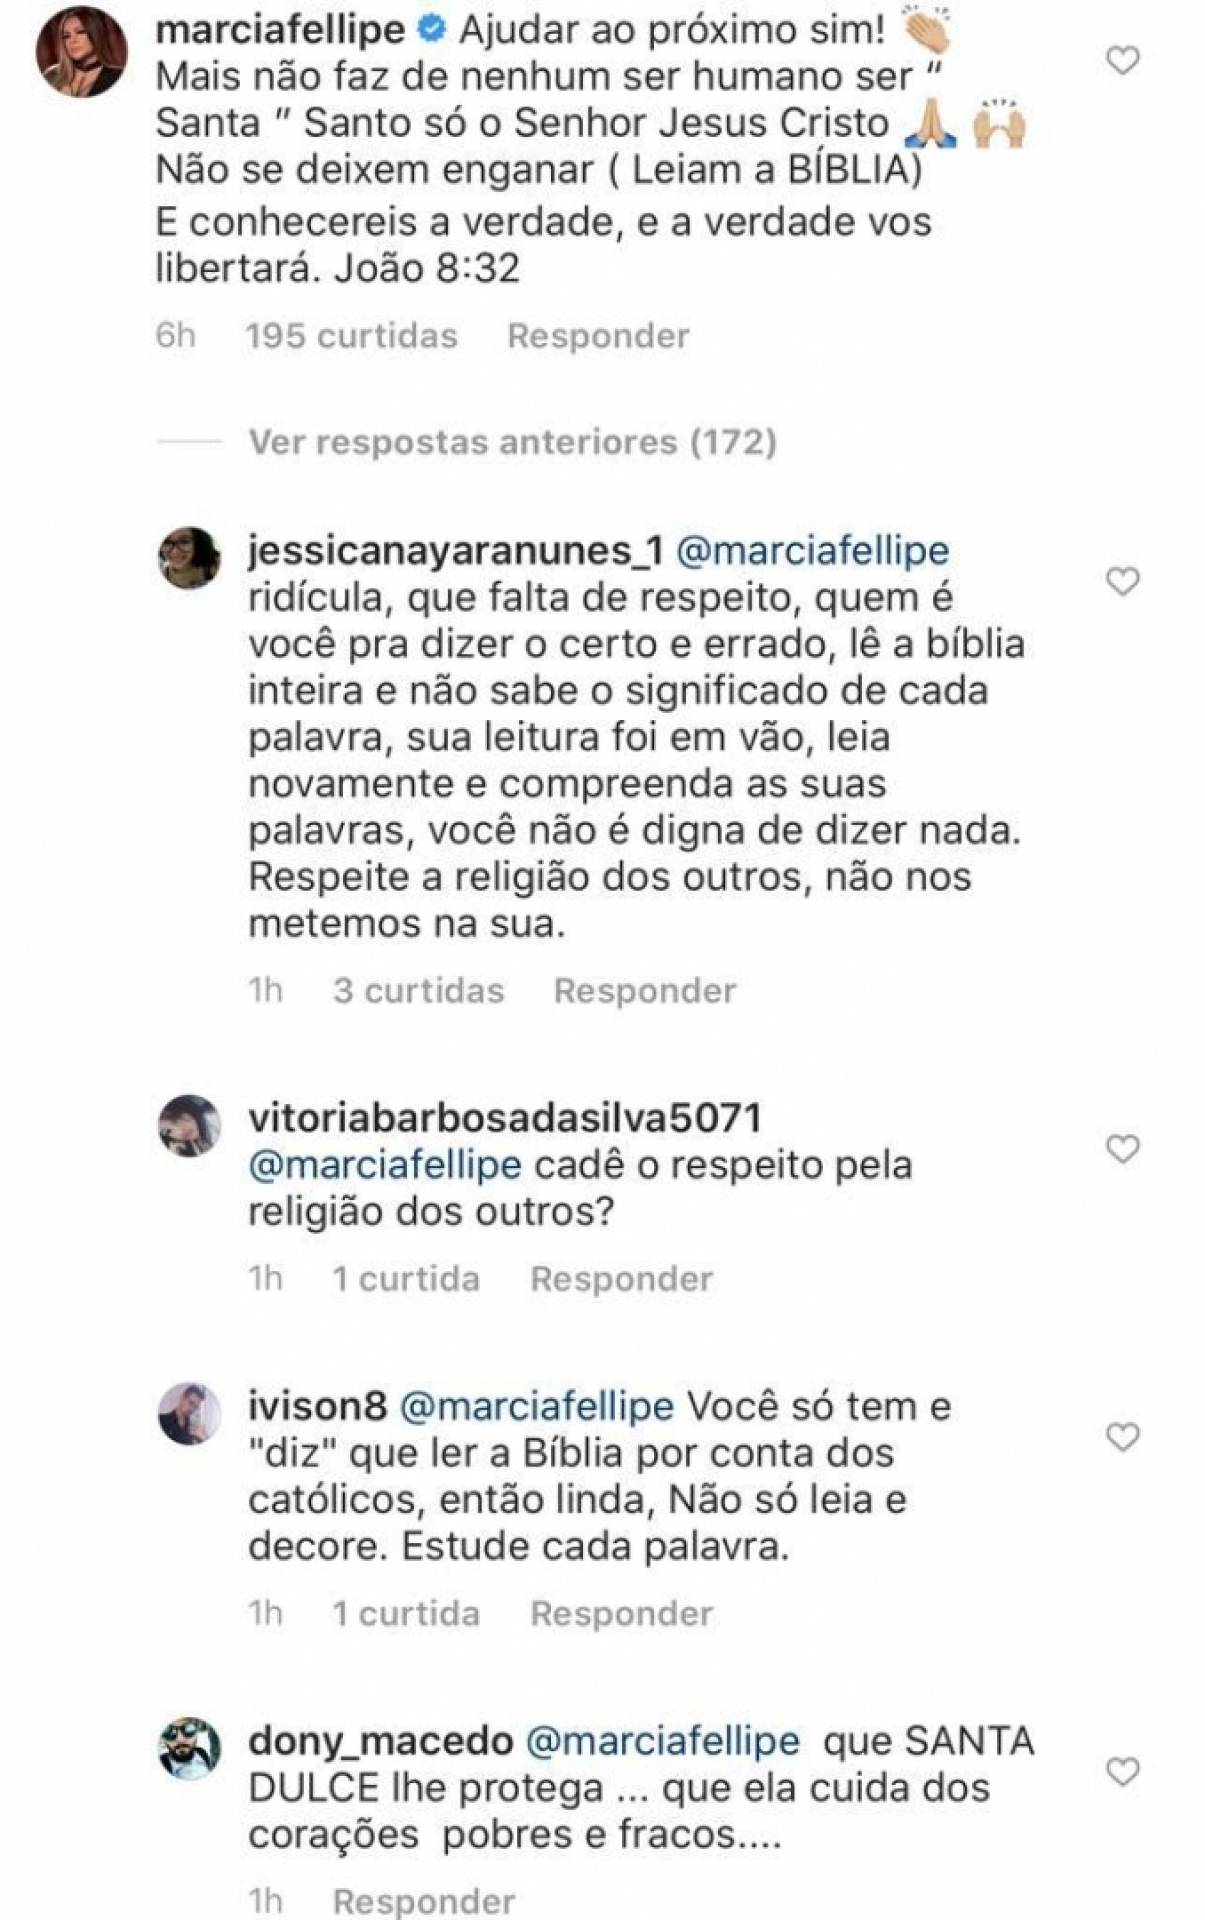 whatsapp image 2019 10 13 at 1 45 15 pm 13727101 - QUERENDO MÍDIA: Cantora Márcia Felipe critica canonização de irmã Dulce